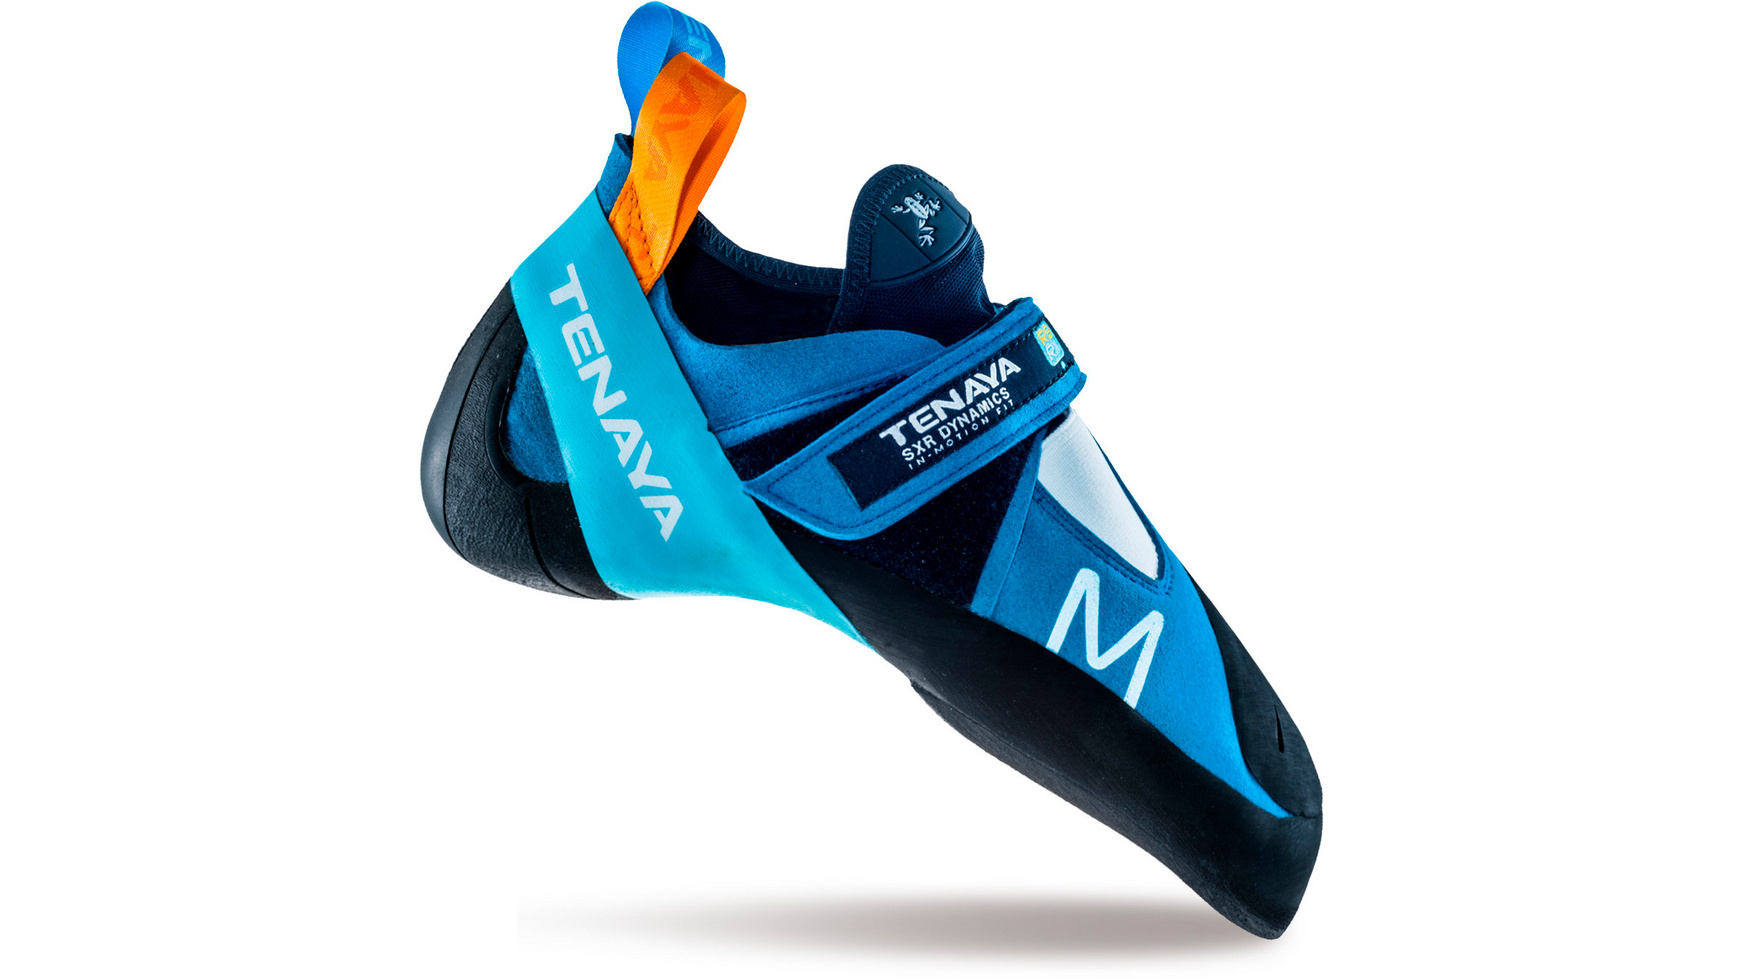 Orange Klettern Schuhe und Magnesium im ein Blau Tasche Stand auf